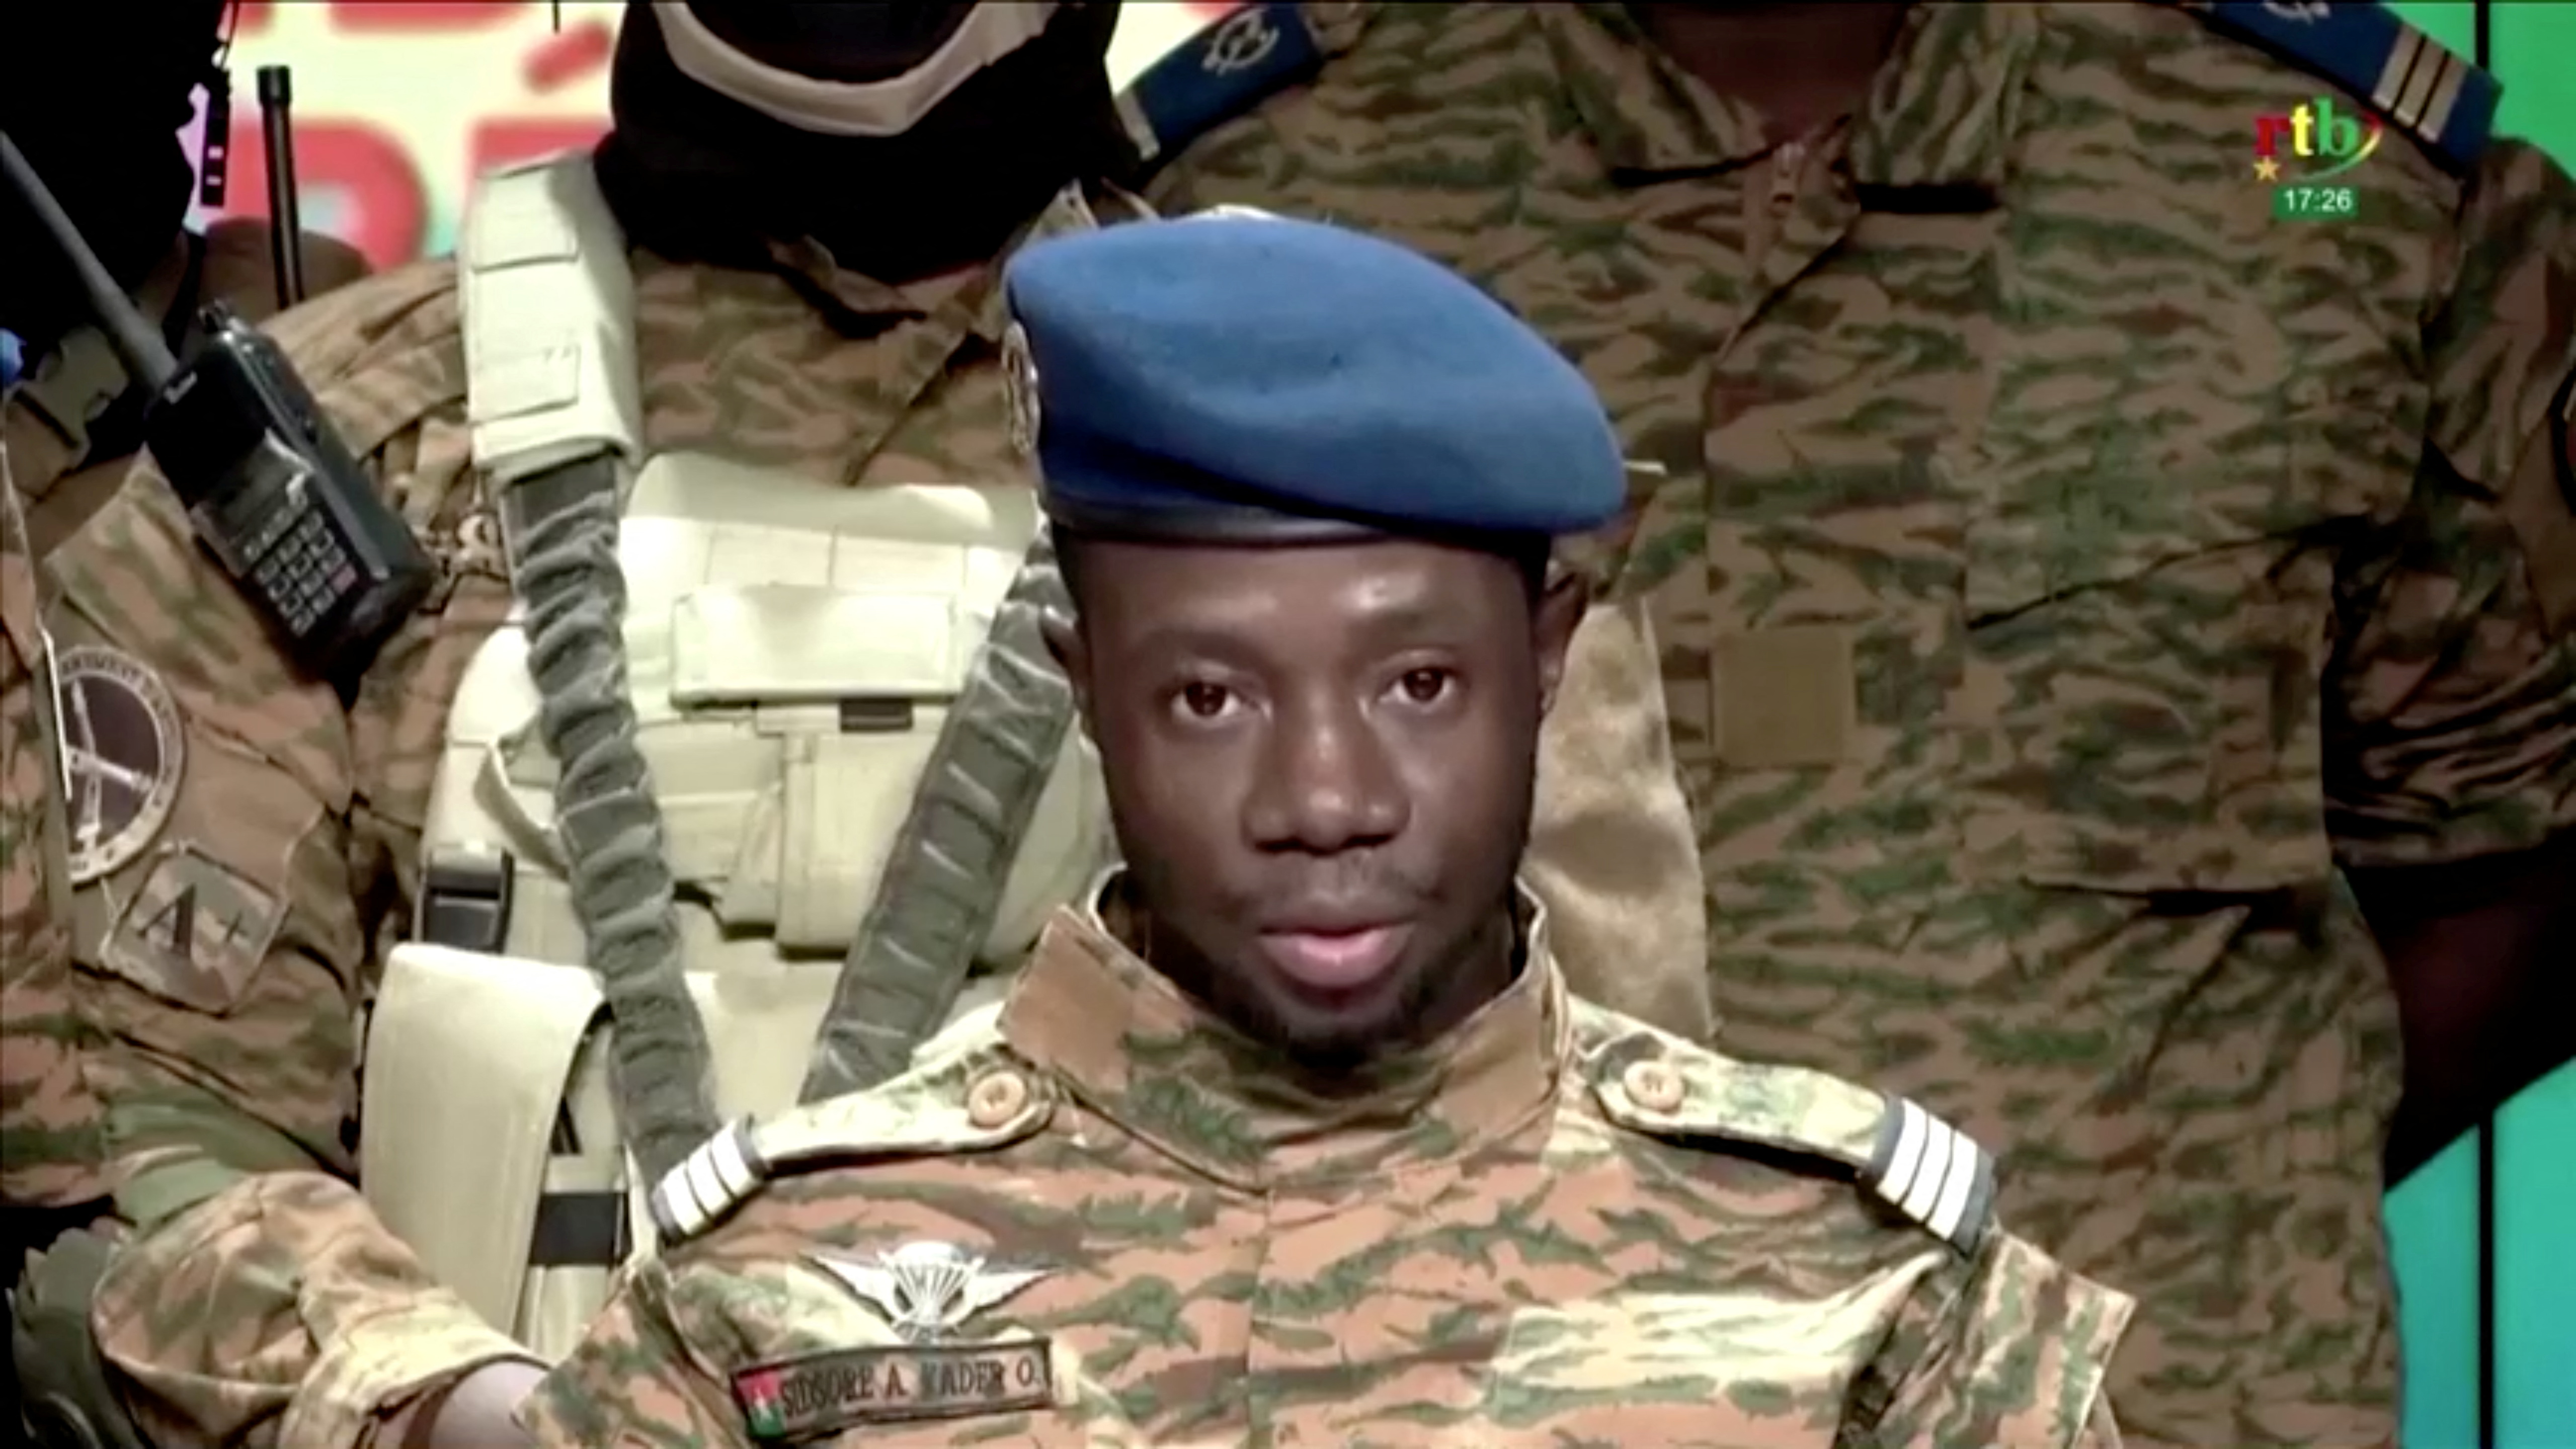 El capitán Sidsore Kader Ouedraogo, portavoz del Movimiento Patriótico de Salvaguardia y Restauración, anuncia que el ejército ha tomado el control del país en Uagadugú, Burkina Faso, el 24 de enero de 2022. RTB/Reuters TV vía REUTERS